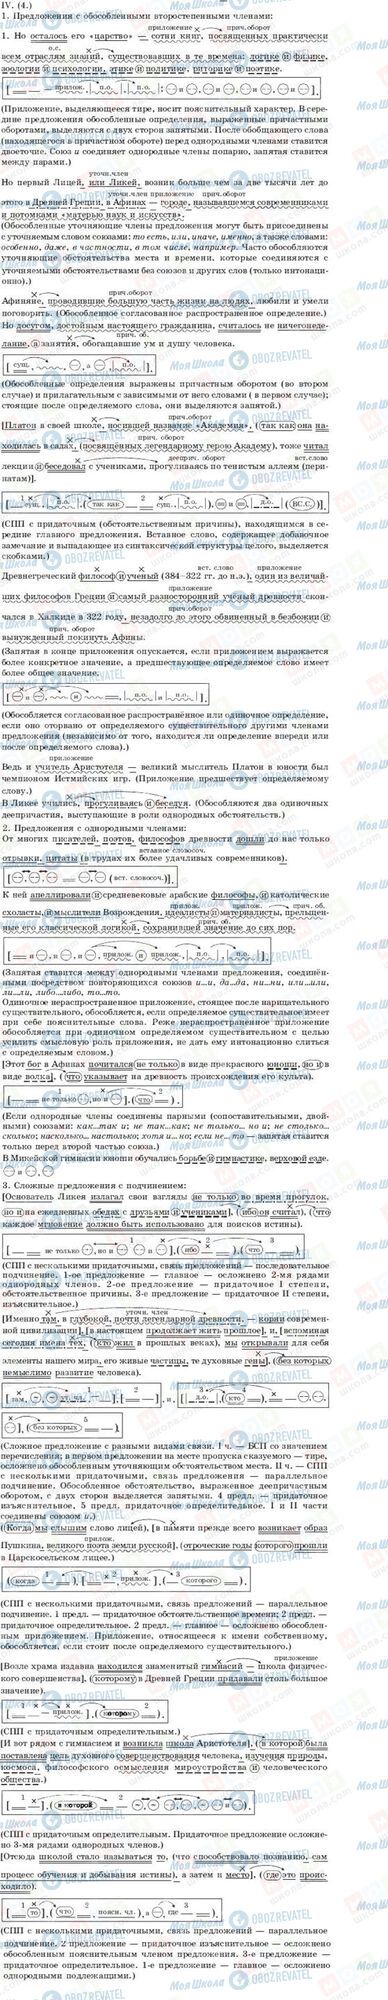 ГДЗ Русский язык 11 класс страница IV(4)